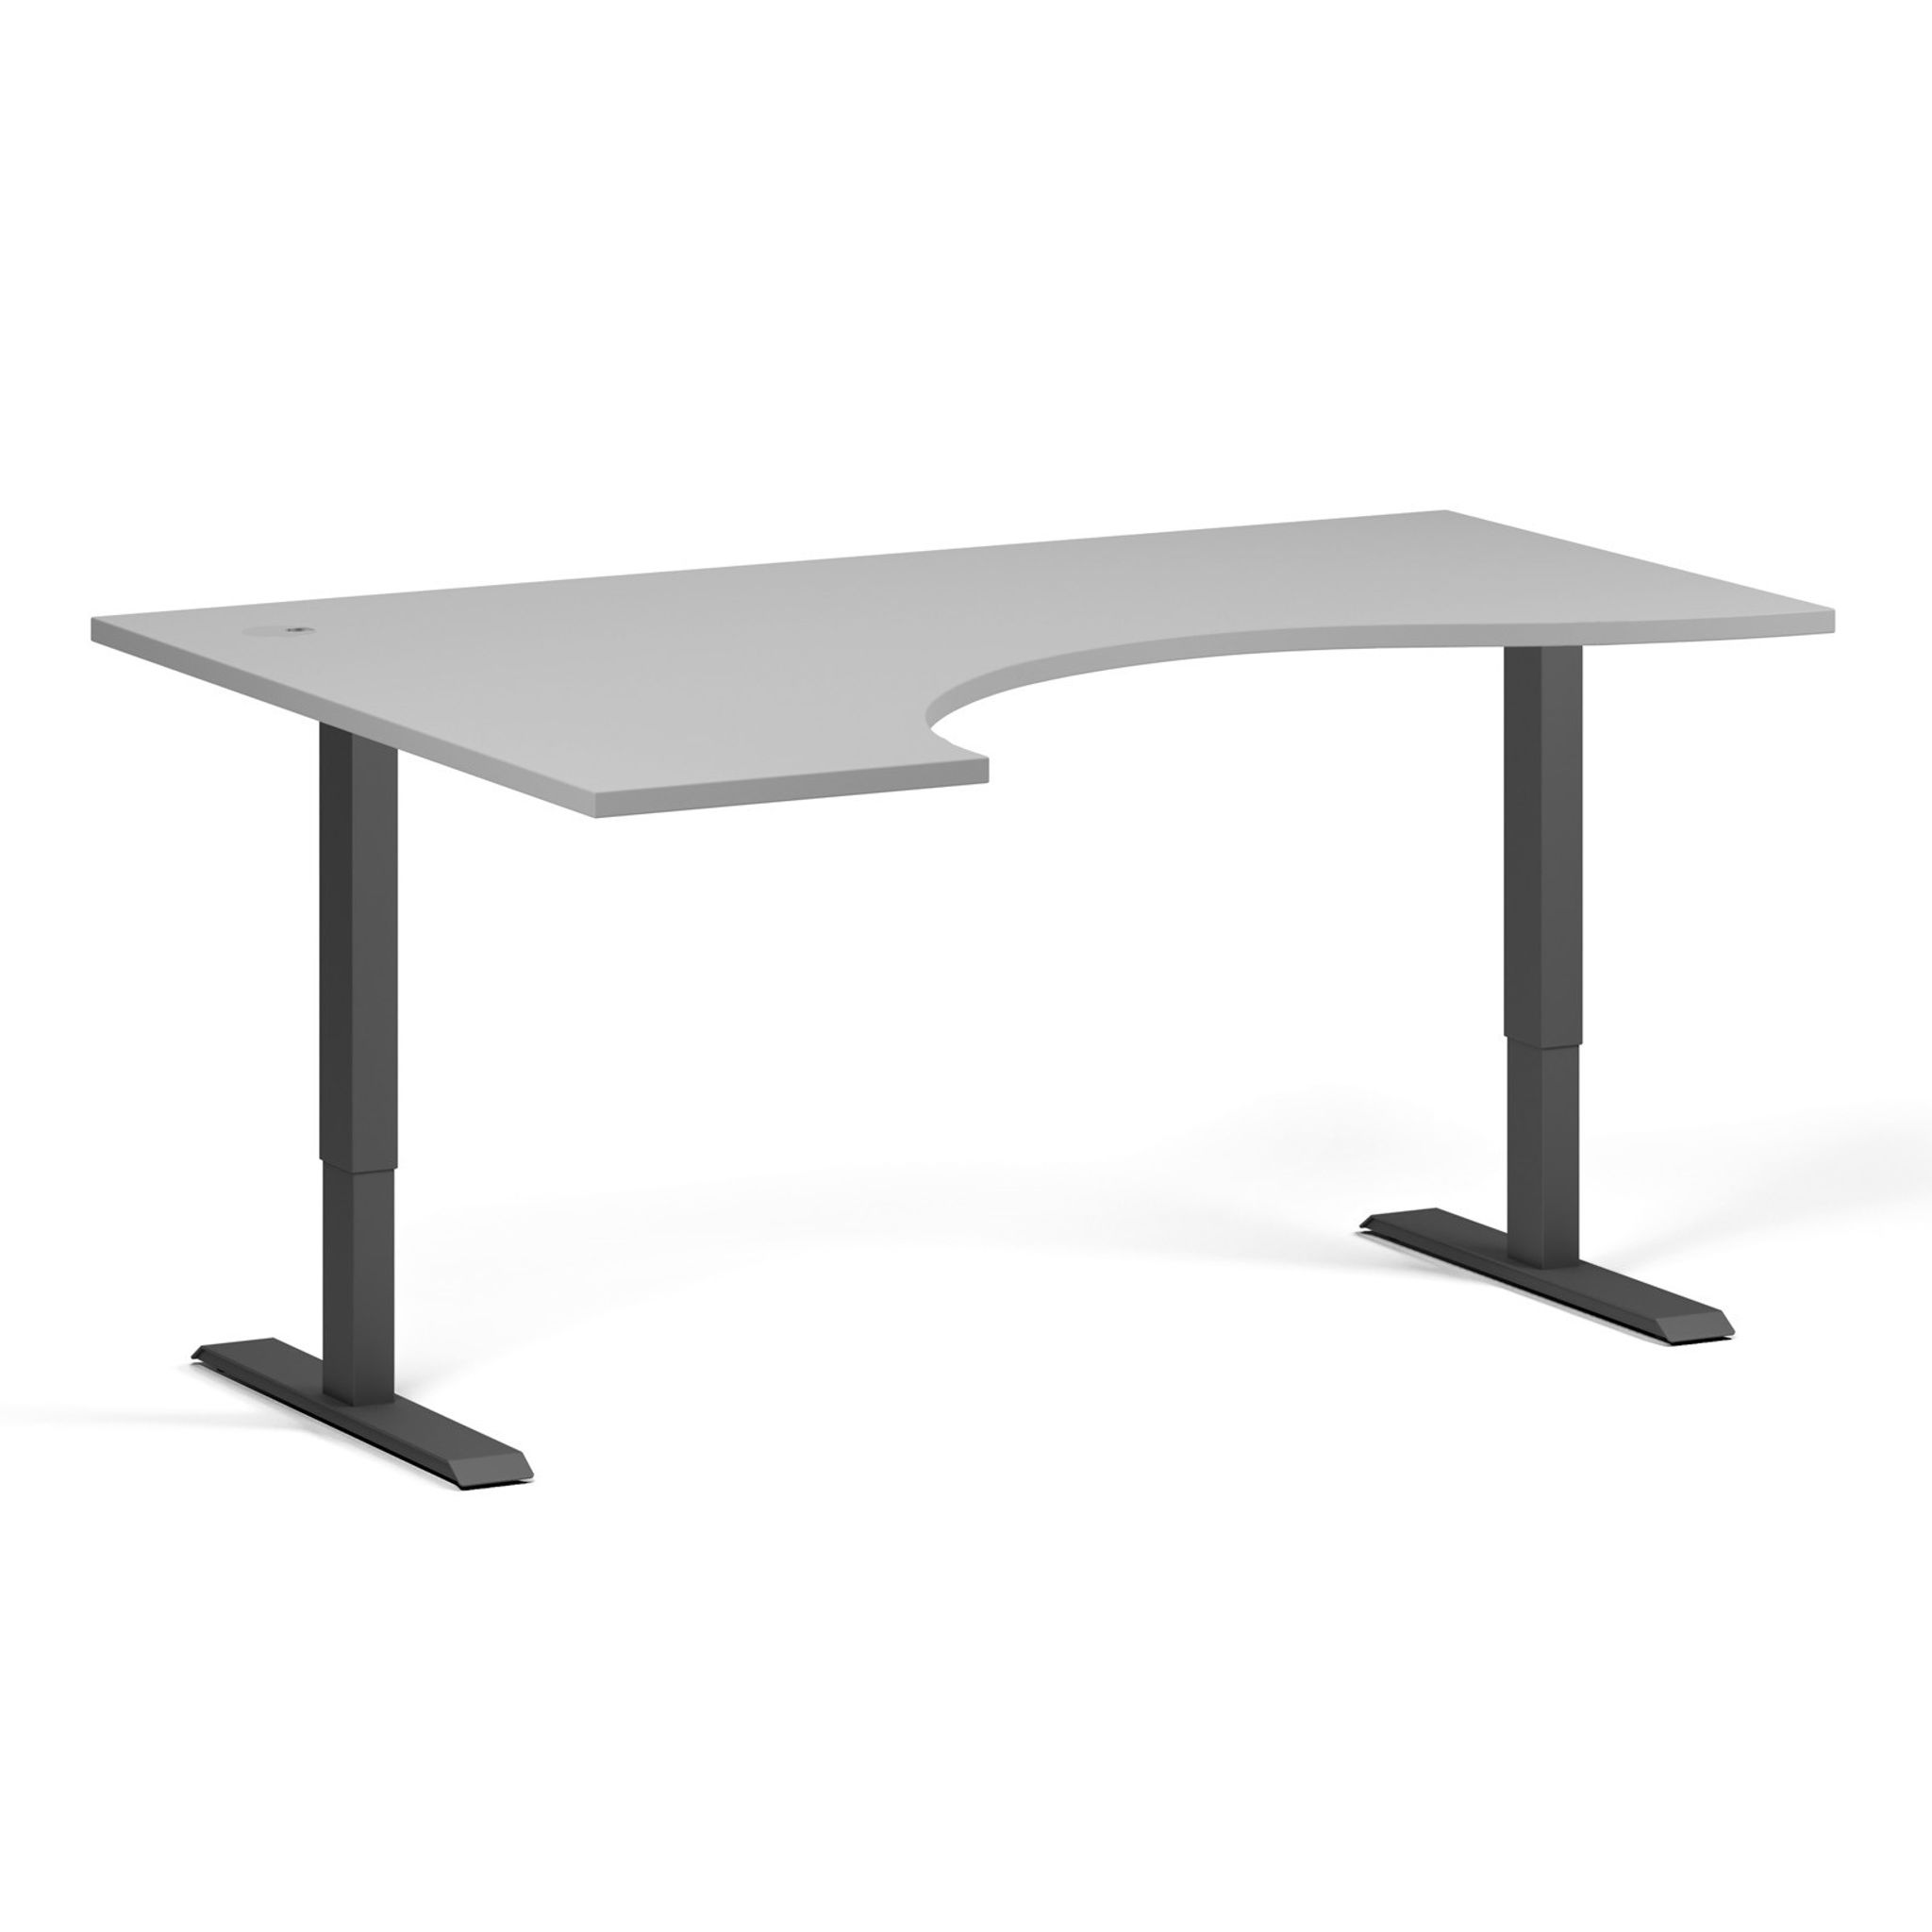 Výškově nastavitelný stůl, 2 motory, 745-1215 mm, ergonomický levý, deska 1600x1200 mm, černá podnož, šedá